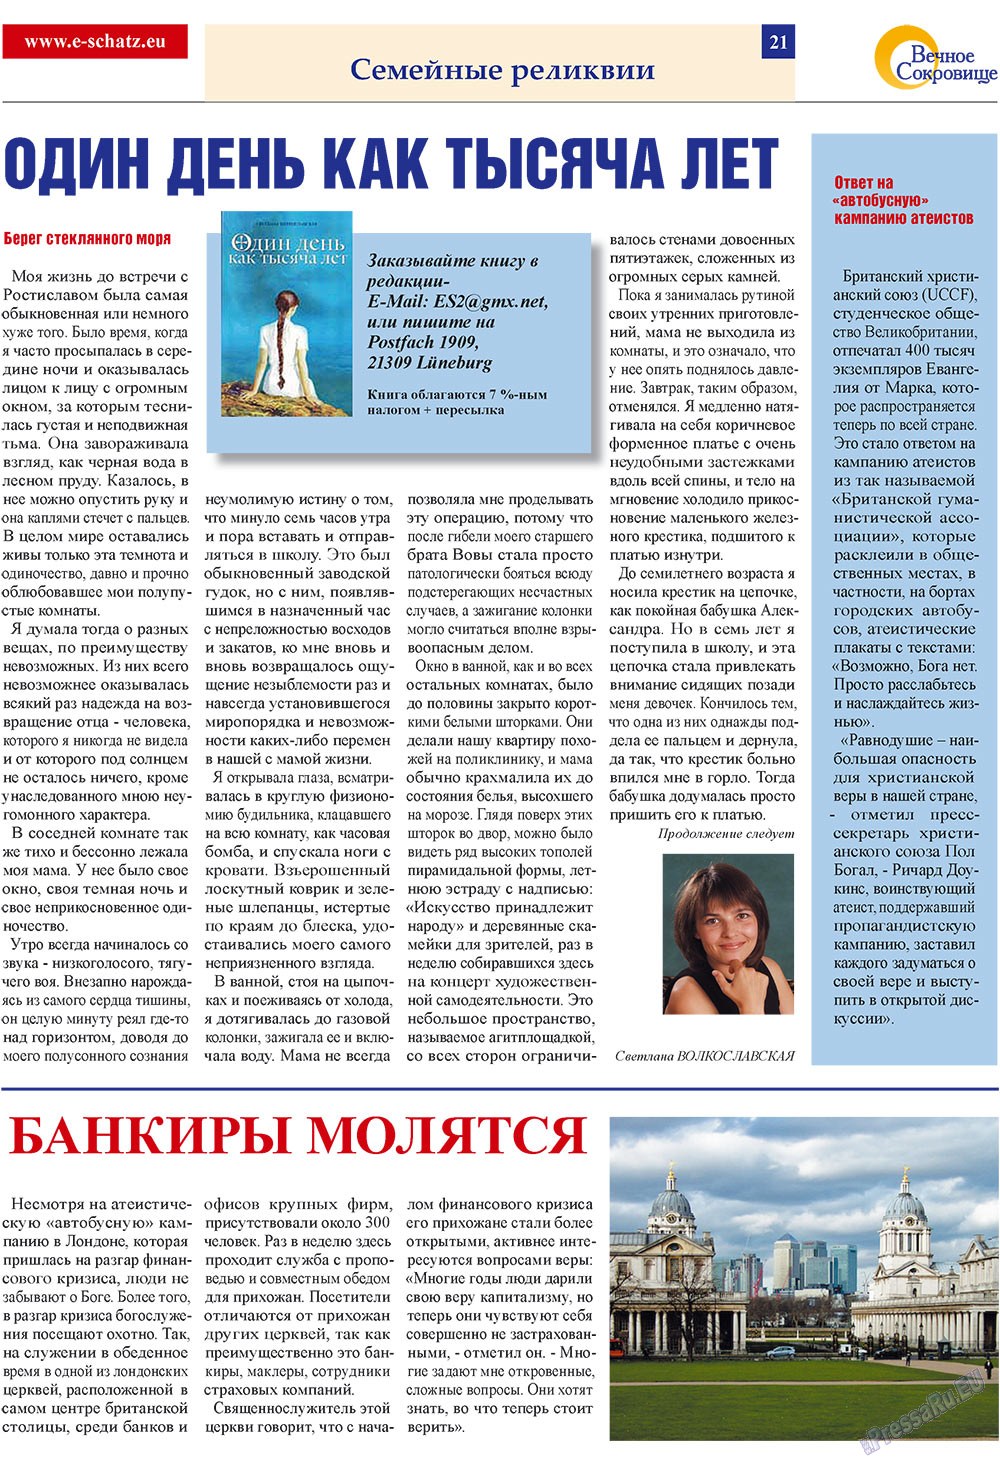 Вечное сокровище (газета). 2009 год, номер 1, стр. 21